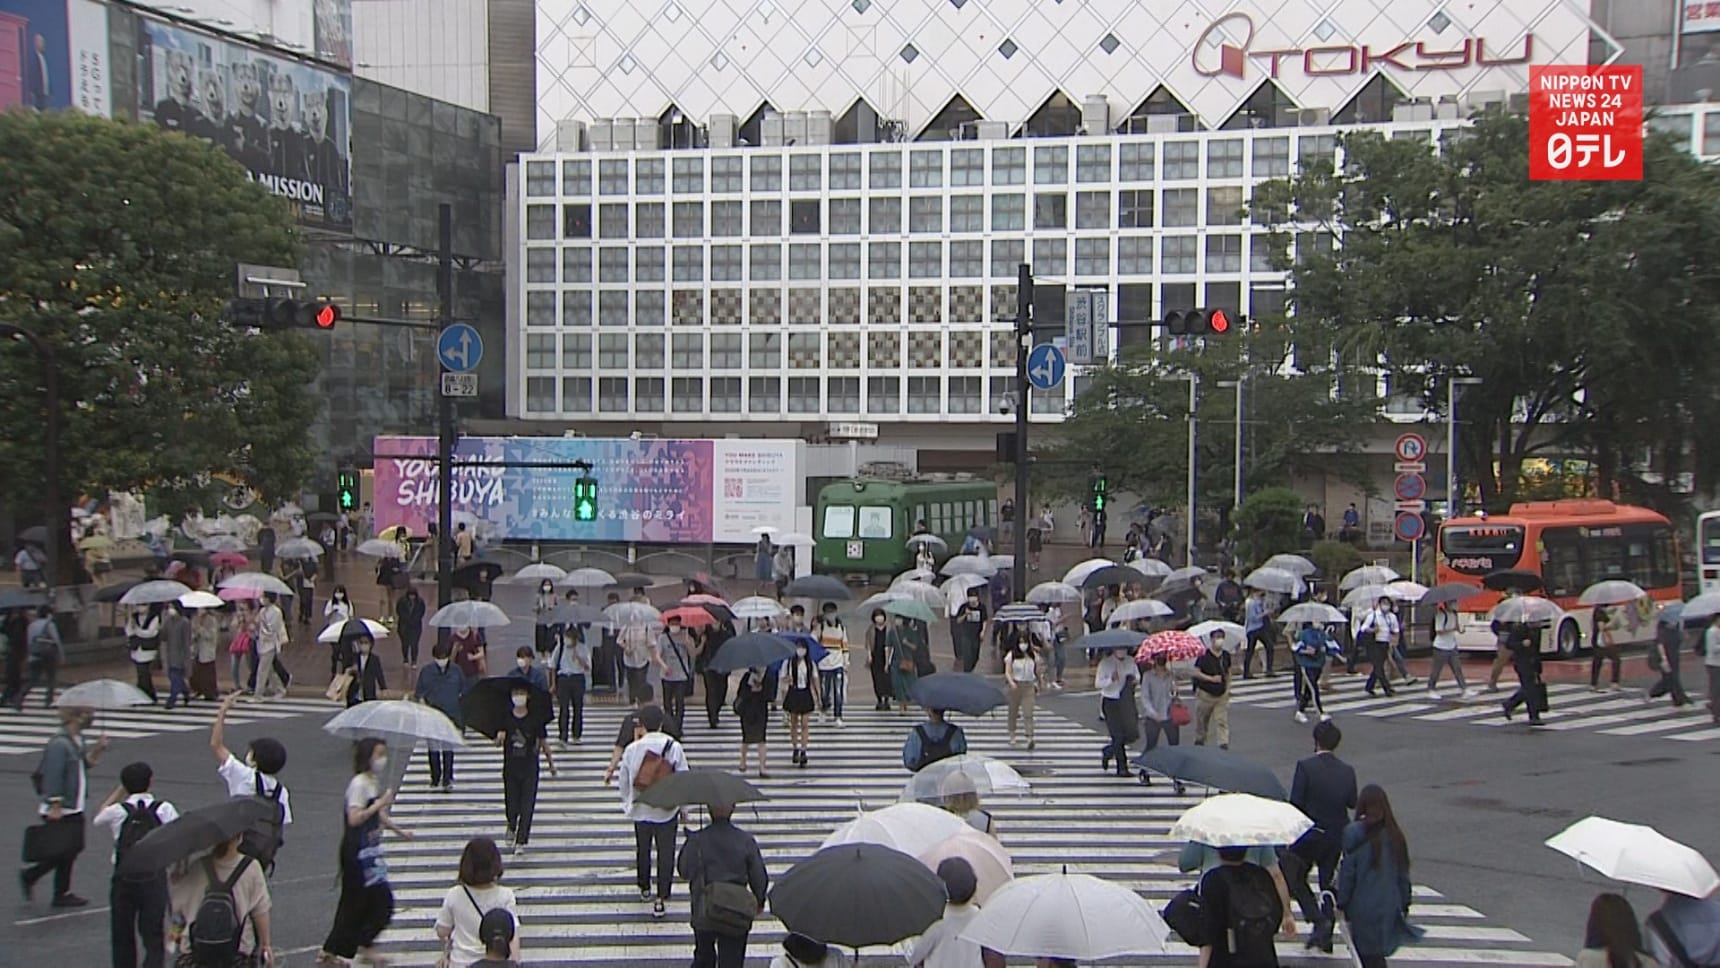 Tokyo On High Alert for Coronavirus